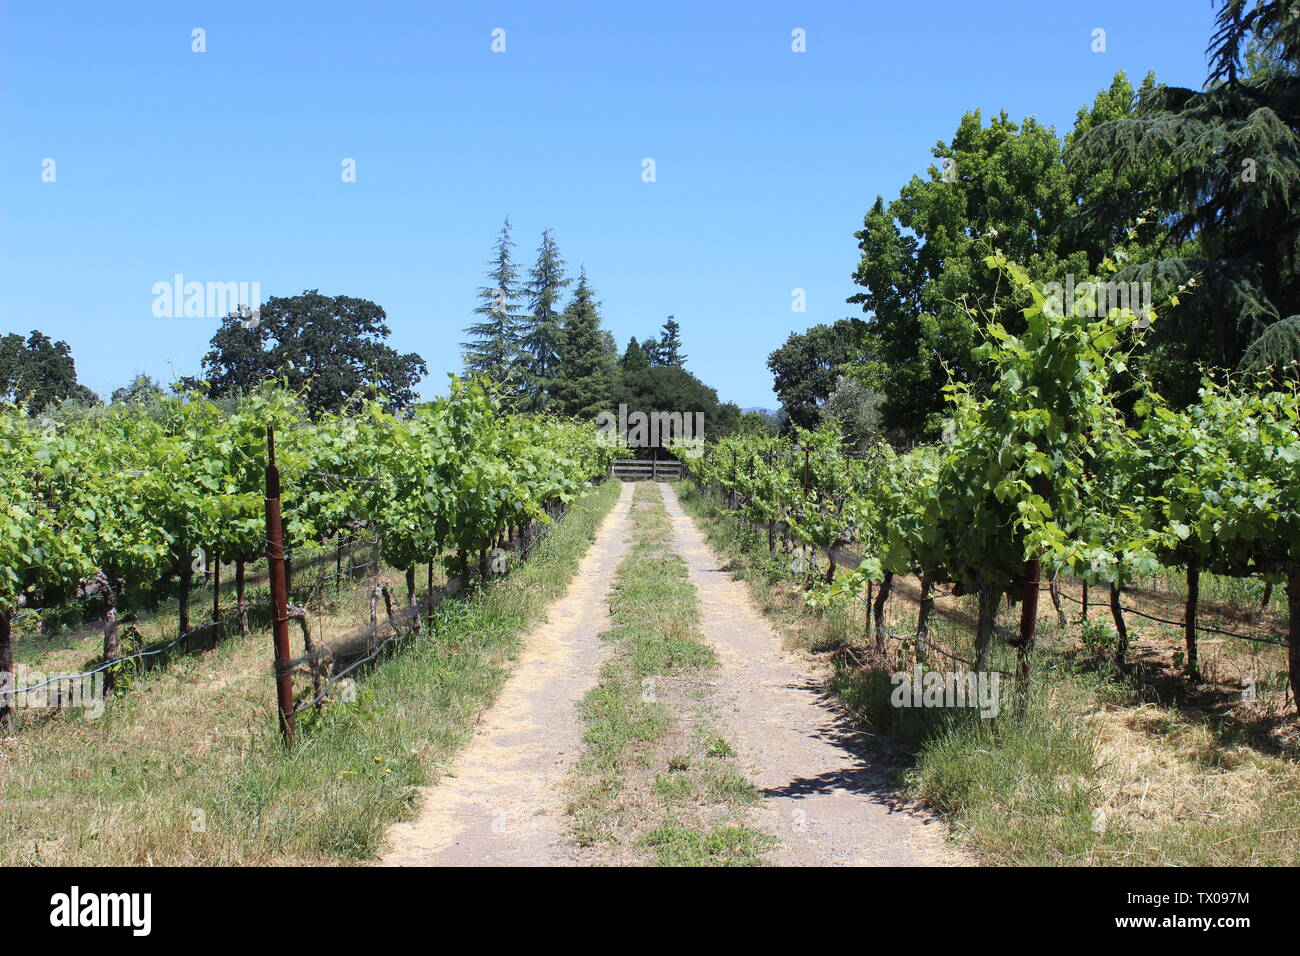 Vineyard, Coombsville, Napa Valley, California Stock Photo